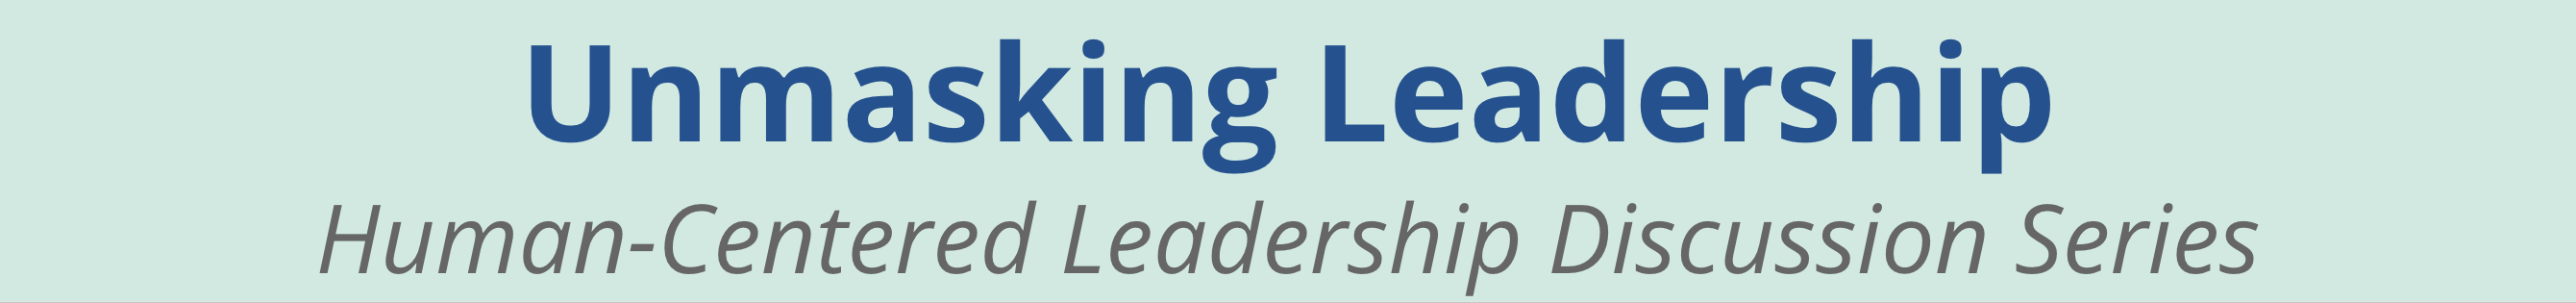 Unmasking Leadership